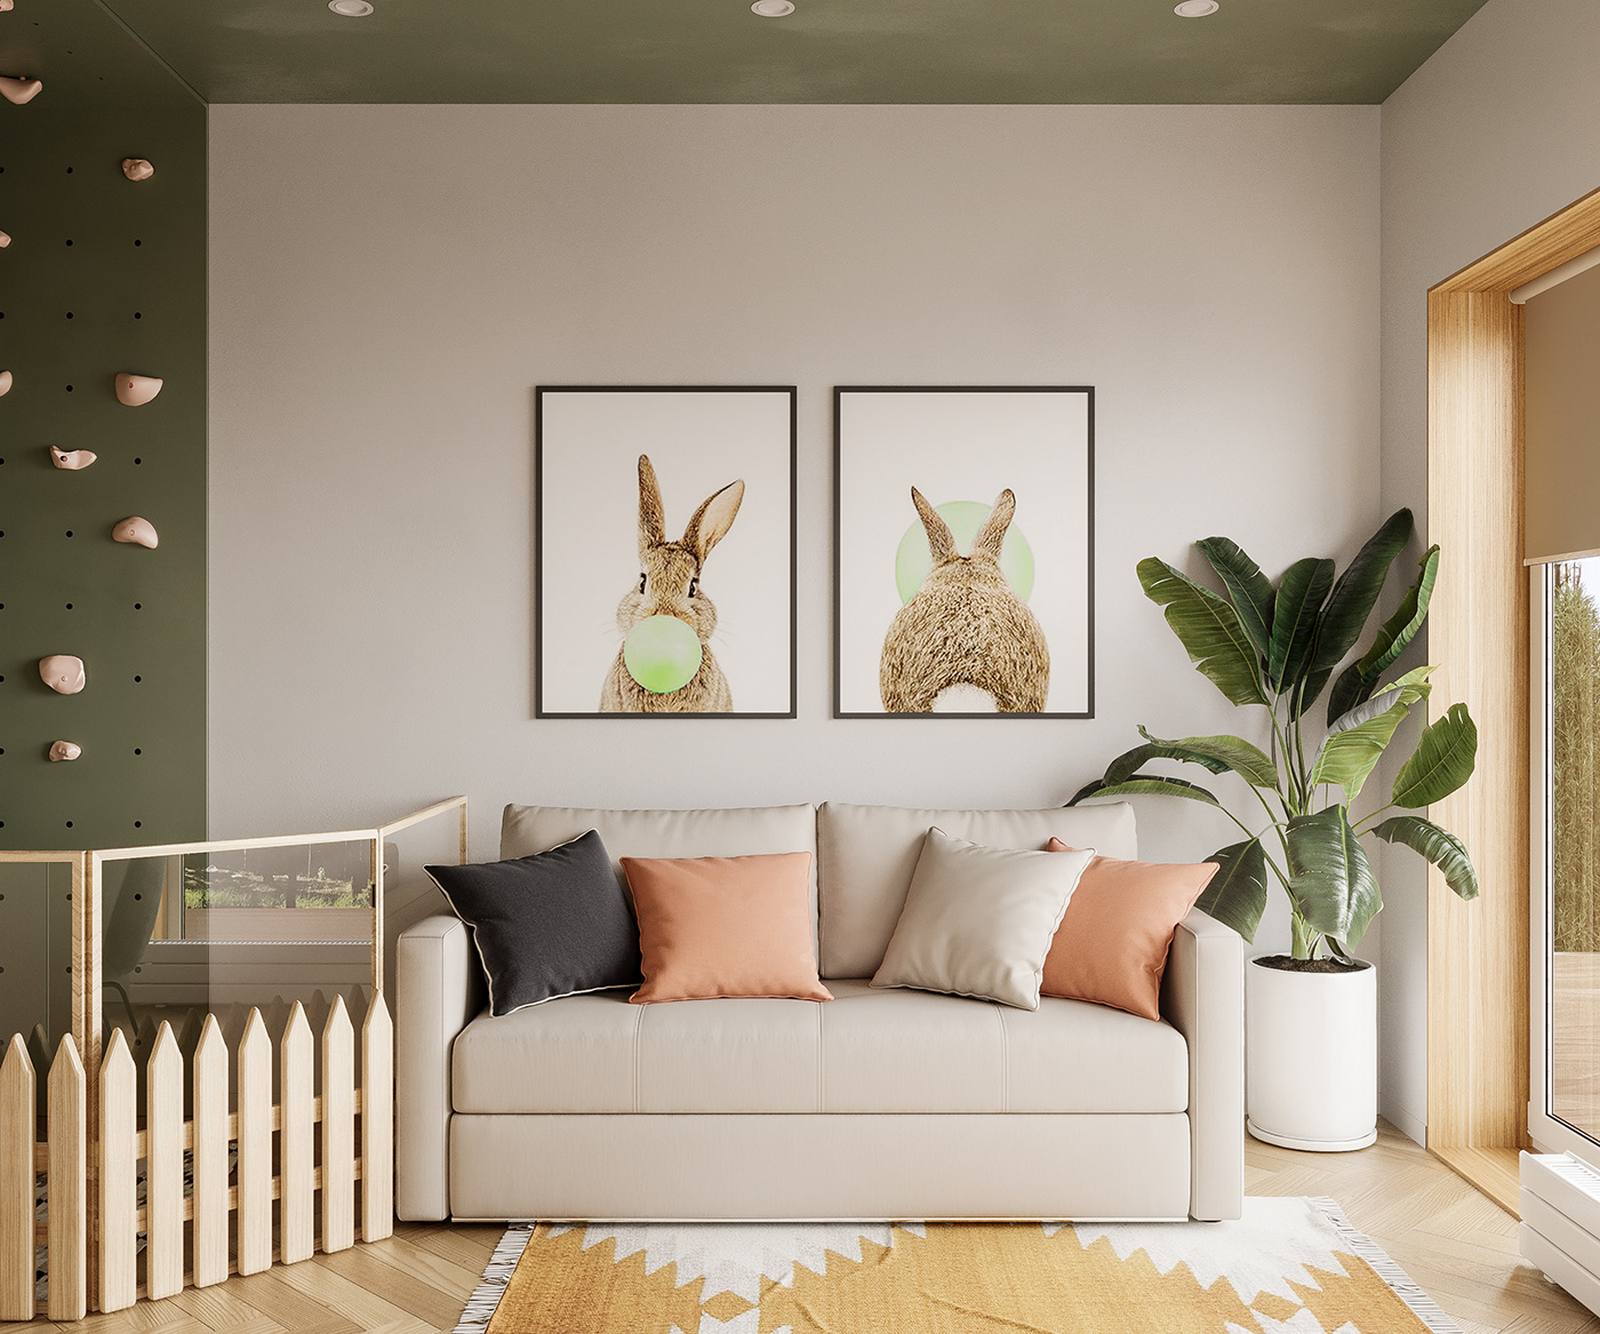 Phòng khách với thảm trải sàn màu cam gạch tươi sáng, ghế sofa màu kem cùng gối tựa nổi bật, trên tường là bộ tranh chú thỏ ngộ nghĩnh. Góc phải là chậu cây cảnh tươi xanh bên khung cửa đầy nắng.